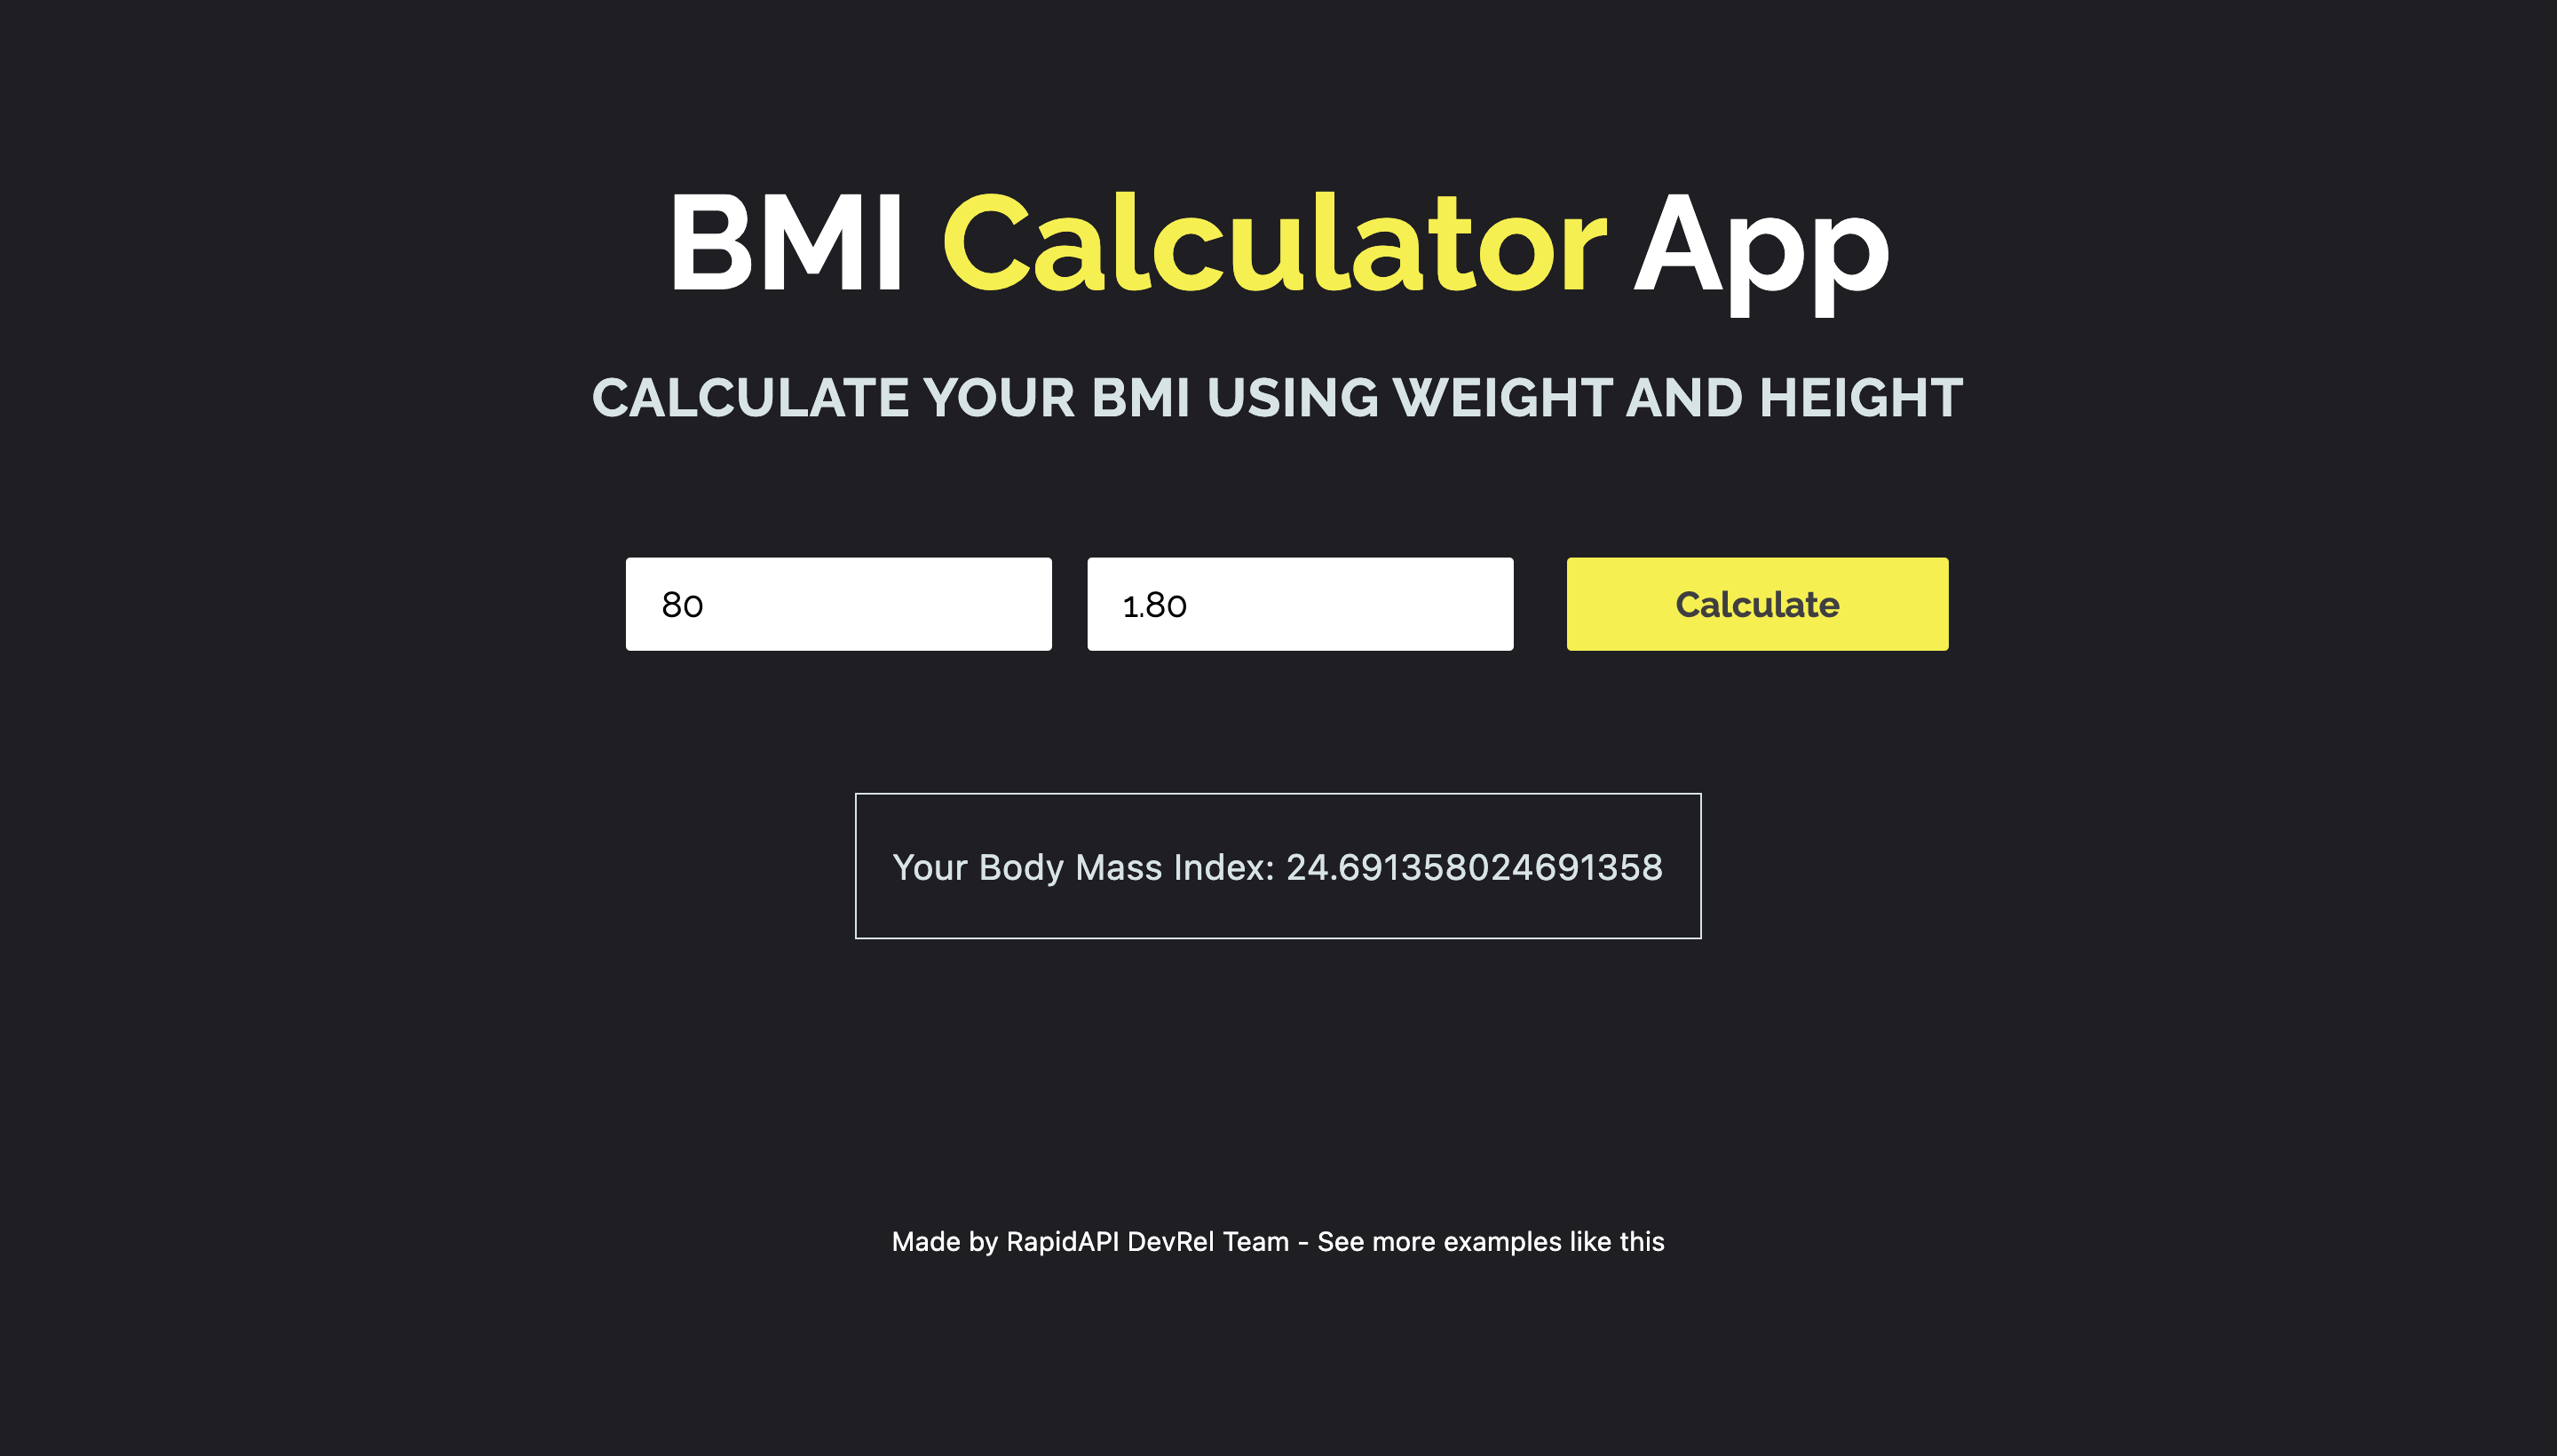 How to build a BMI Calculator App using BMI Calculator API?